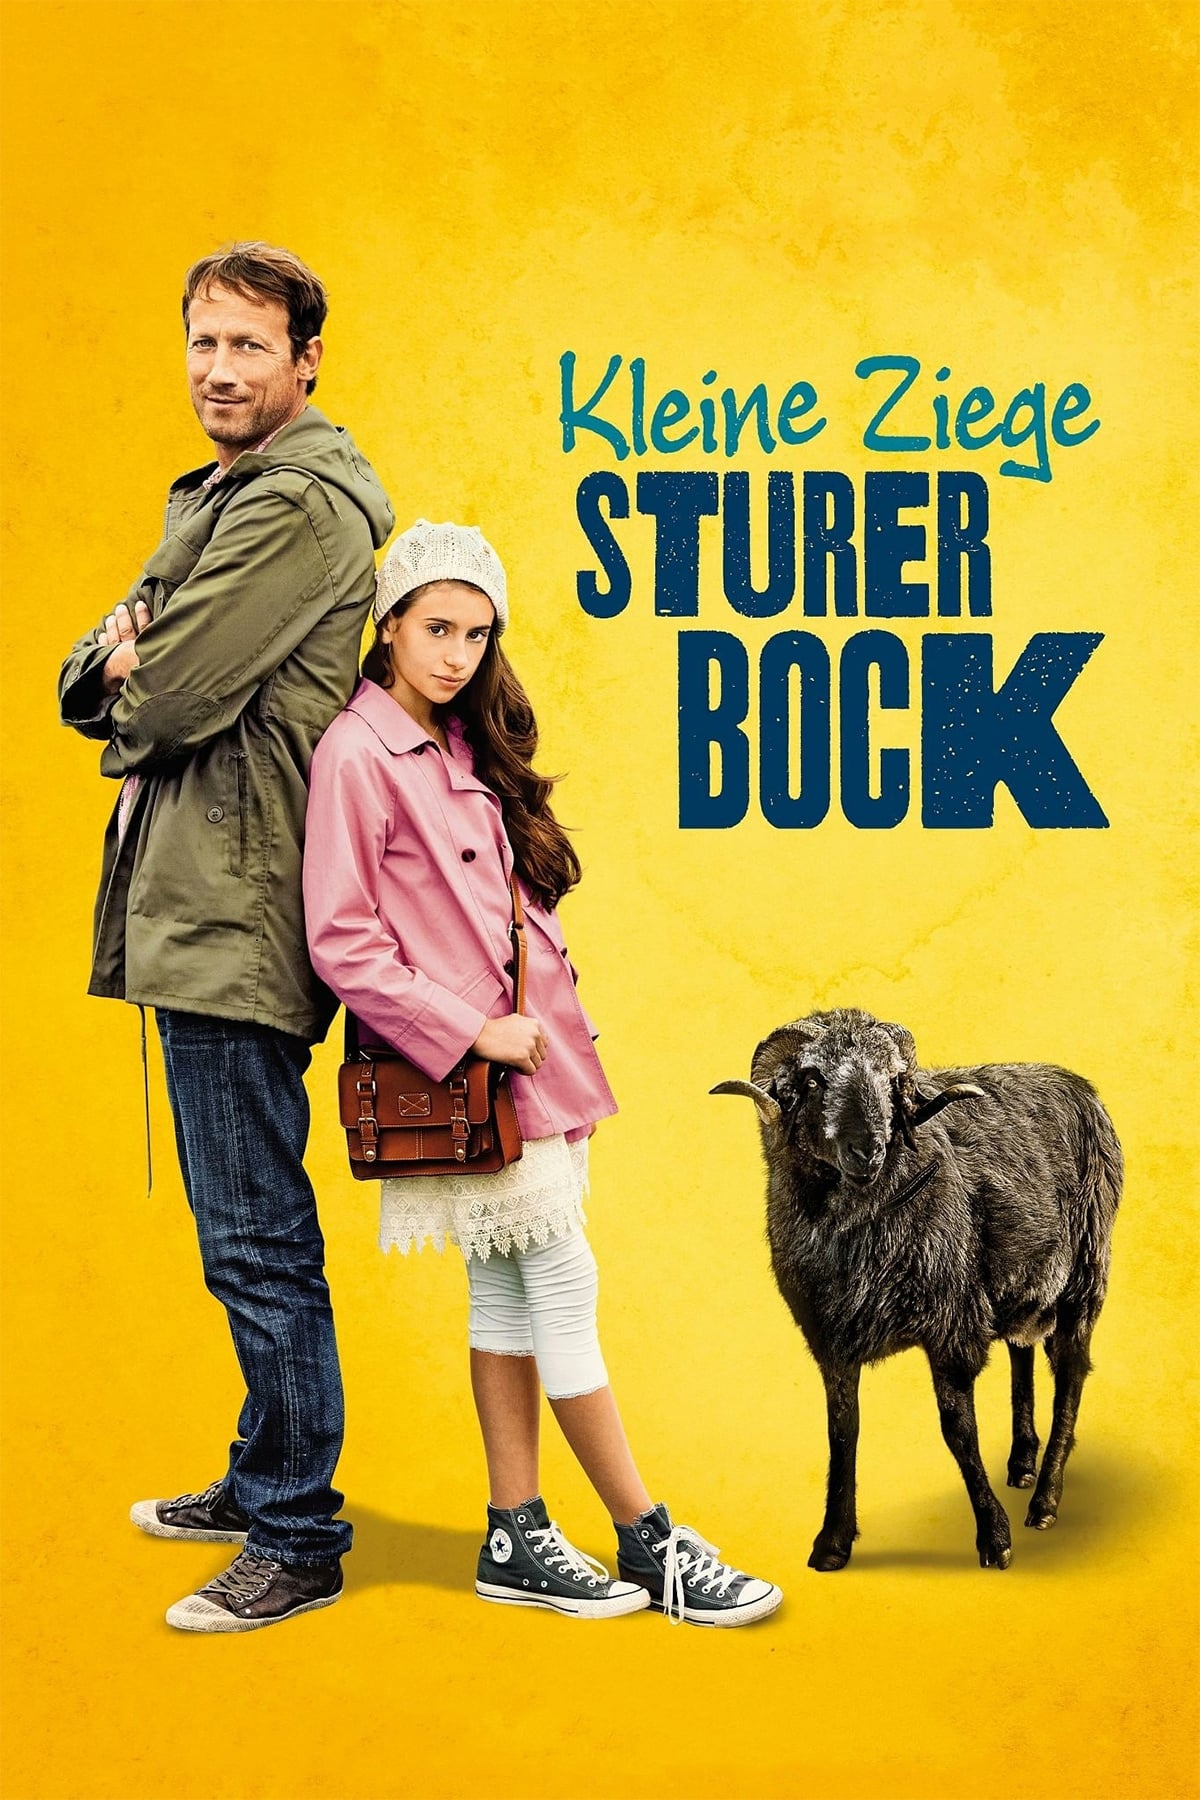 Kleine Ziege, sturer Bock (2015)